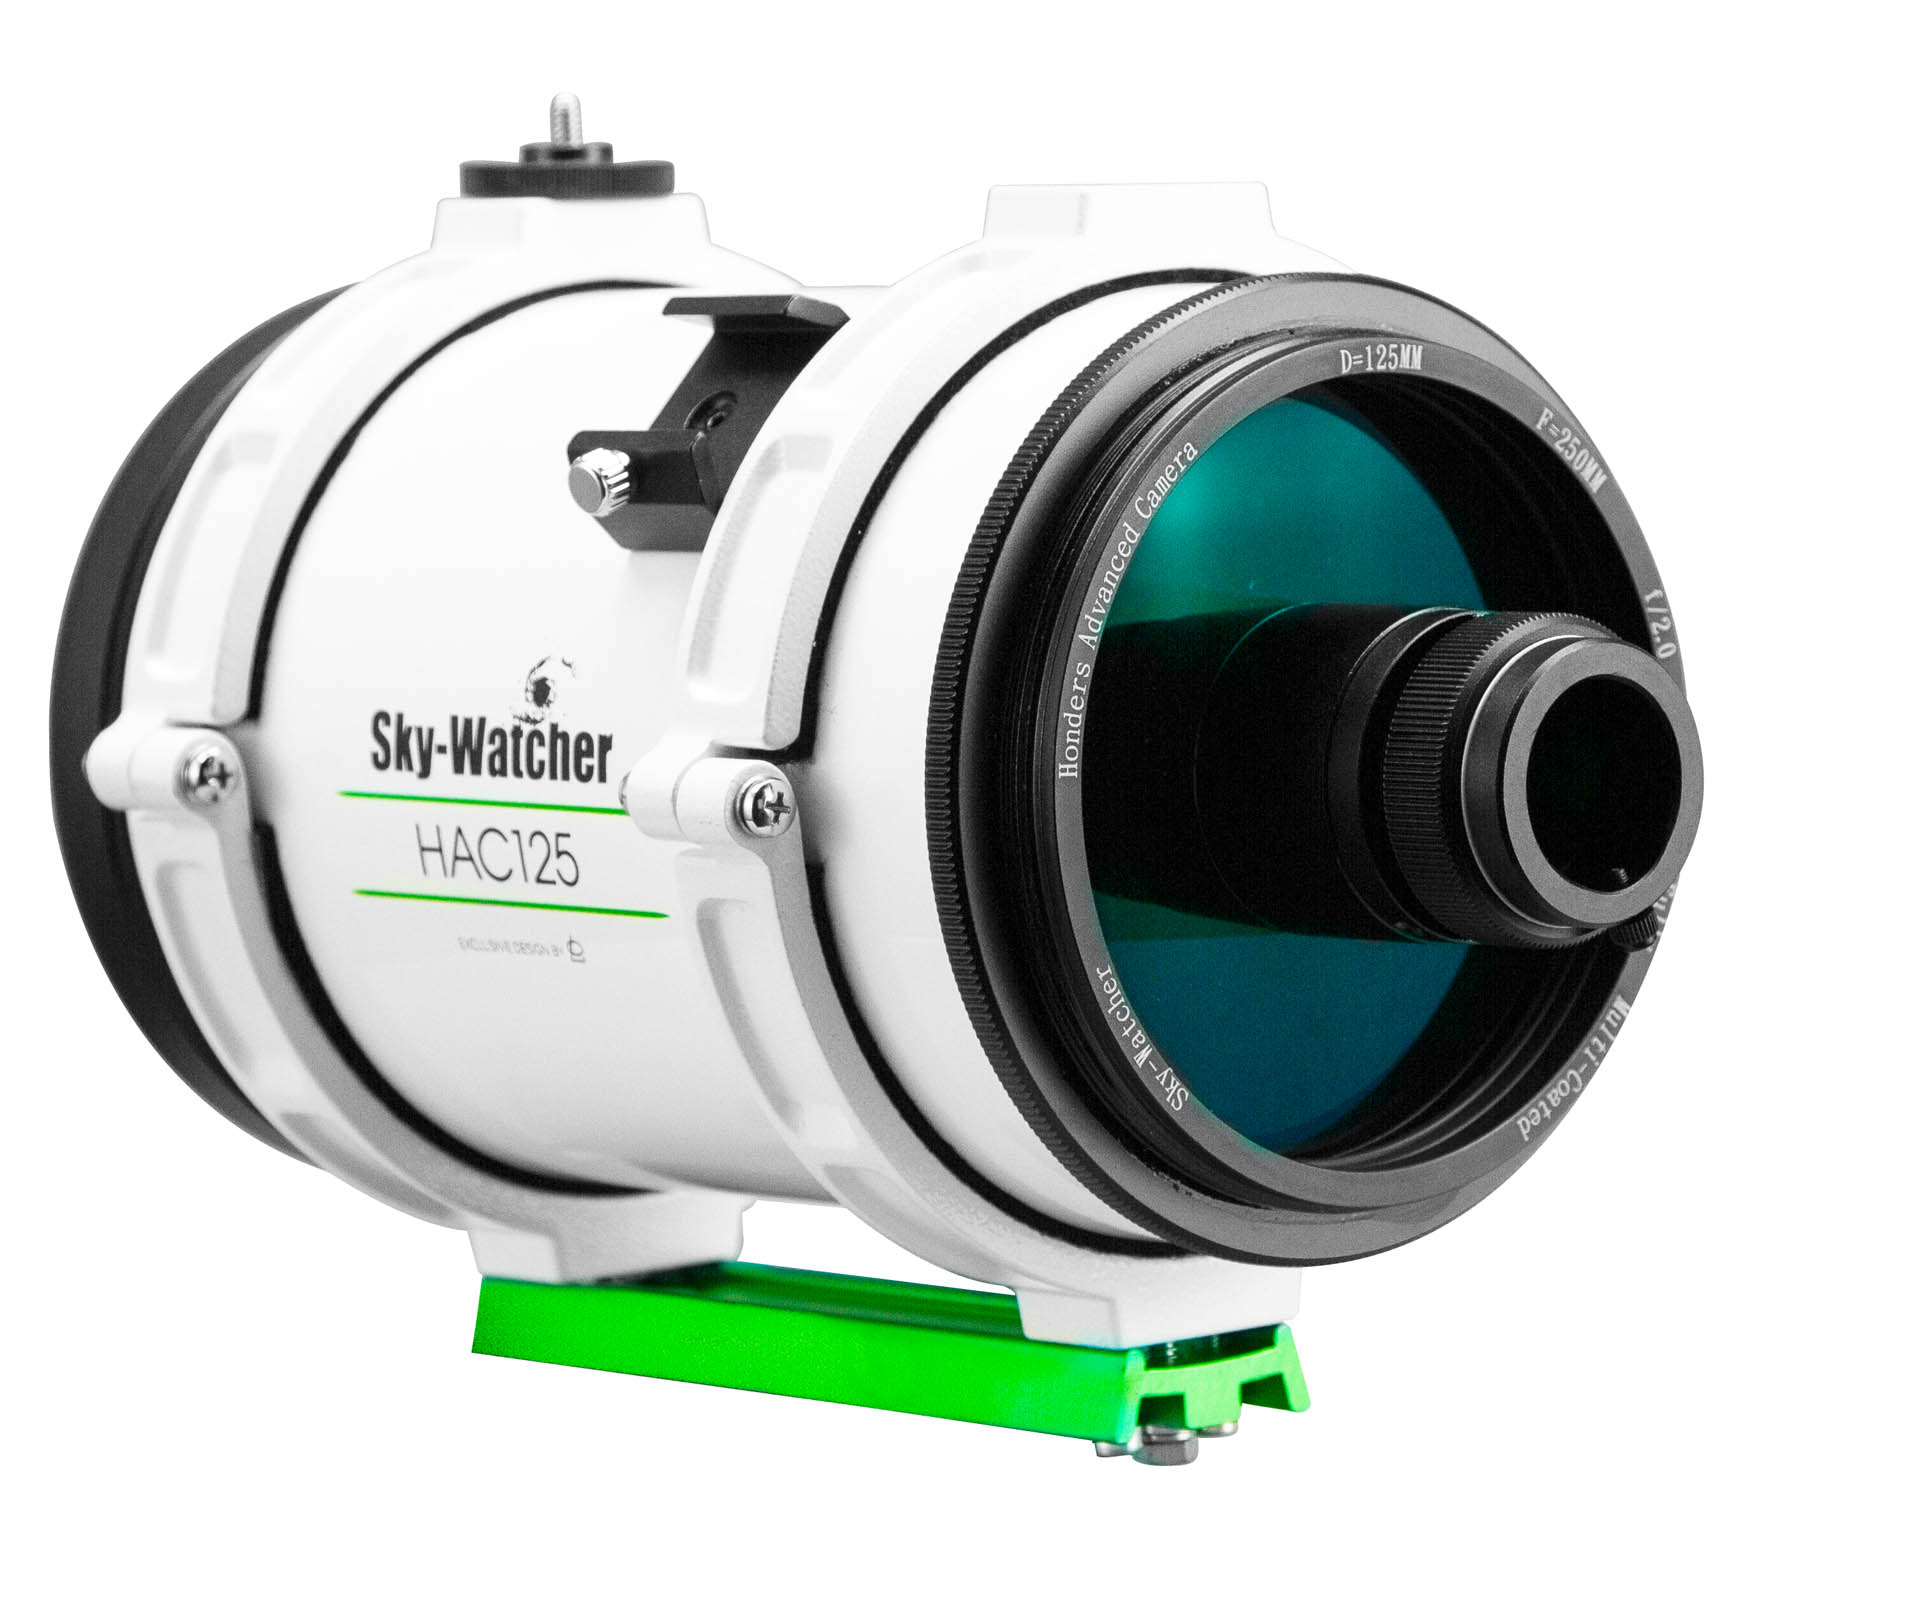  Sky-Watcher HAC125 f/2 con schema ottico Honders Advanced Catadioptric da 125mm di diametro e 250mm di lunghezza focale 